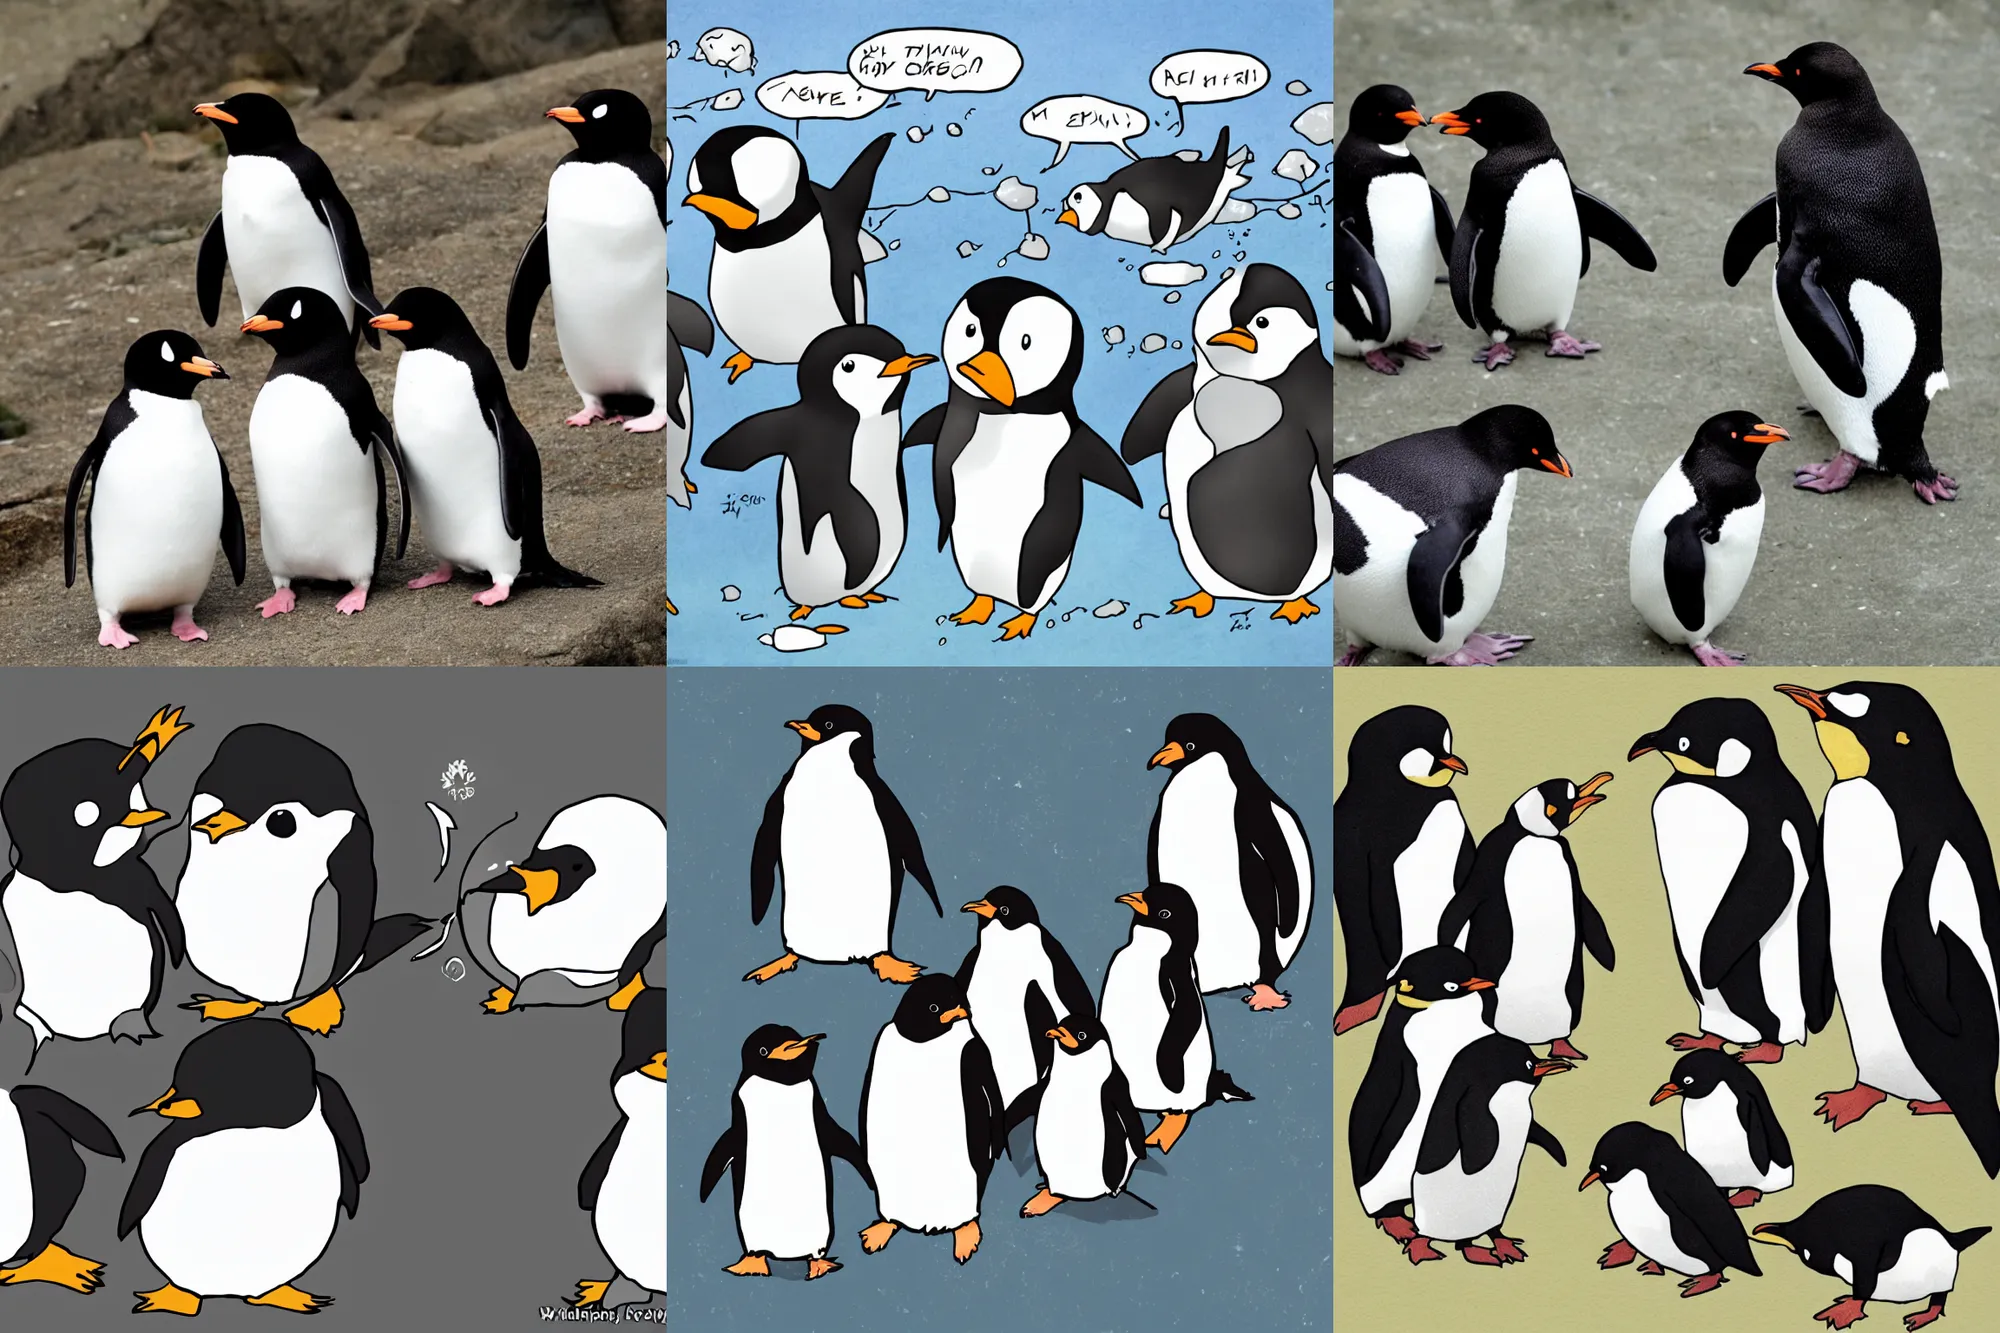 Japanese zoo mourns anime-loving celebrity penguin